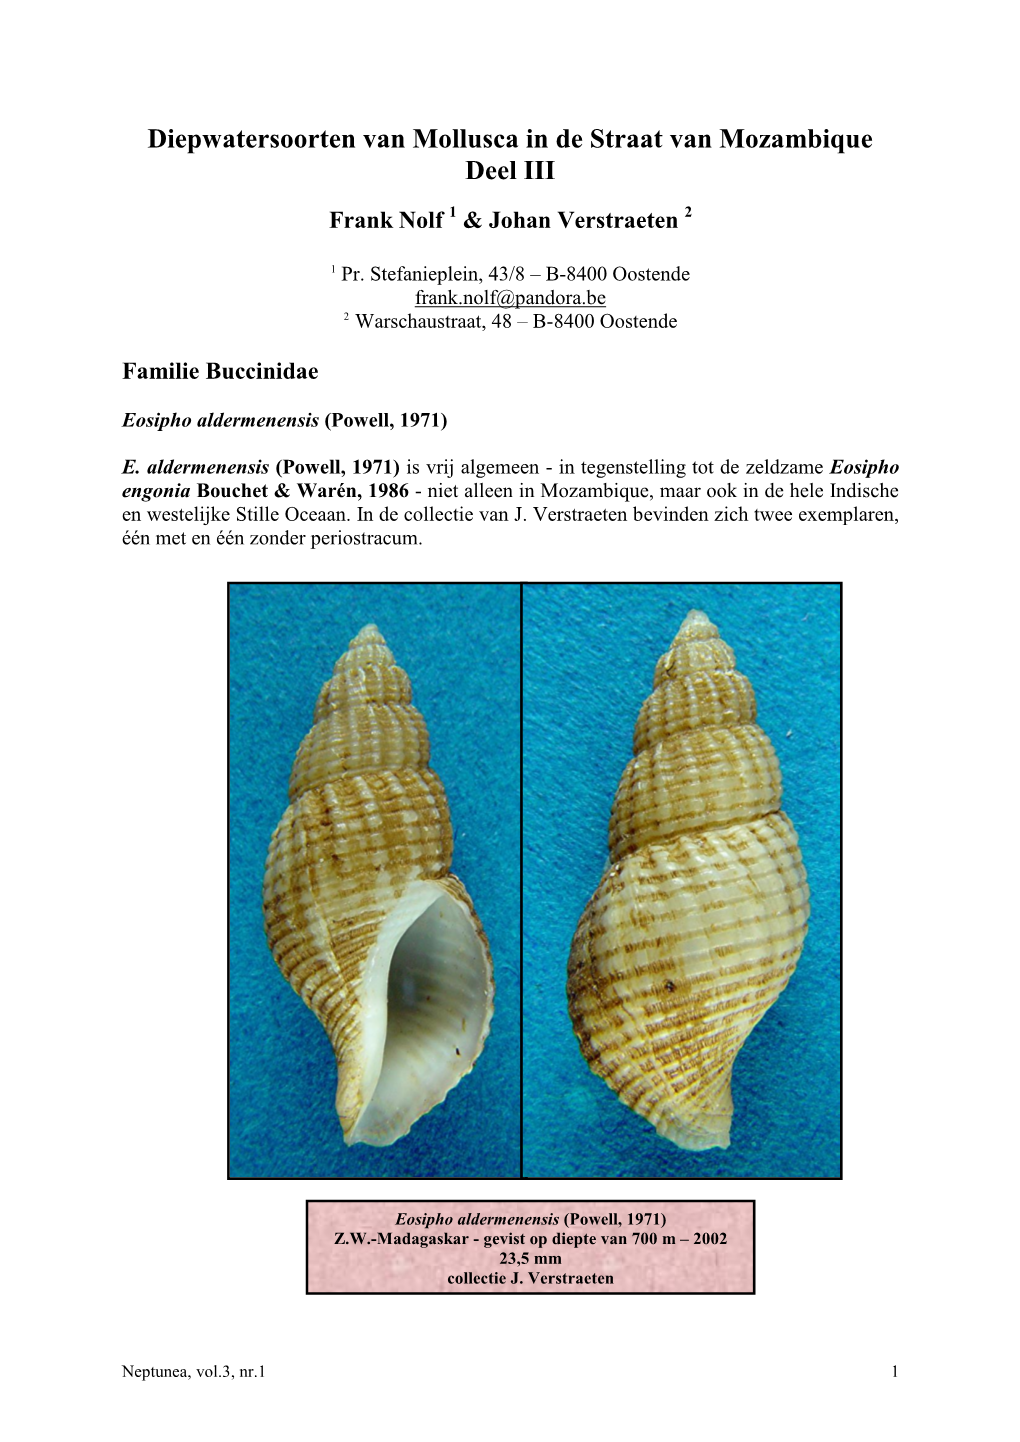 Diepwatersoorten Van Mollusca in De Straat Van Mozambique Deel III Frank Nolf 1 & Johan Verstraeten 2